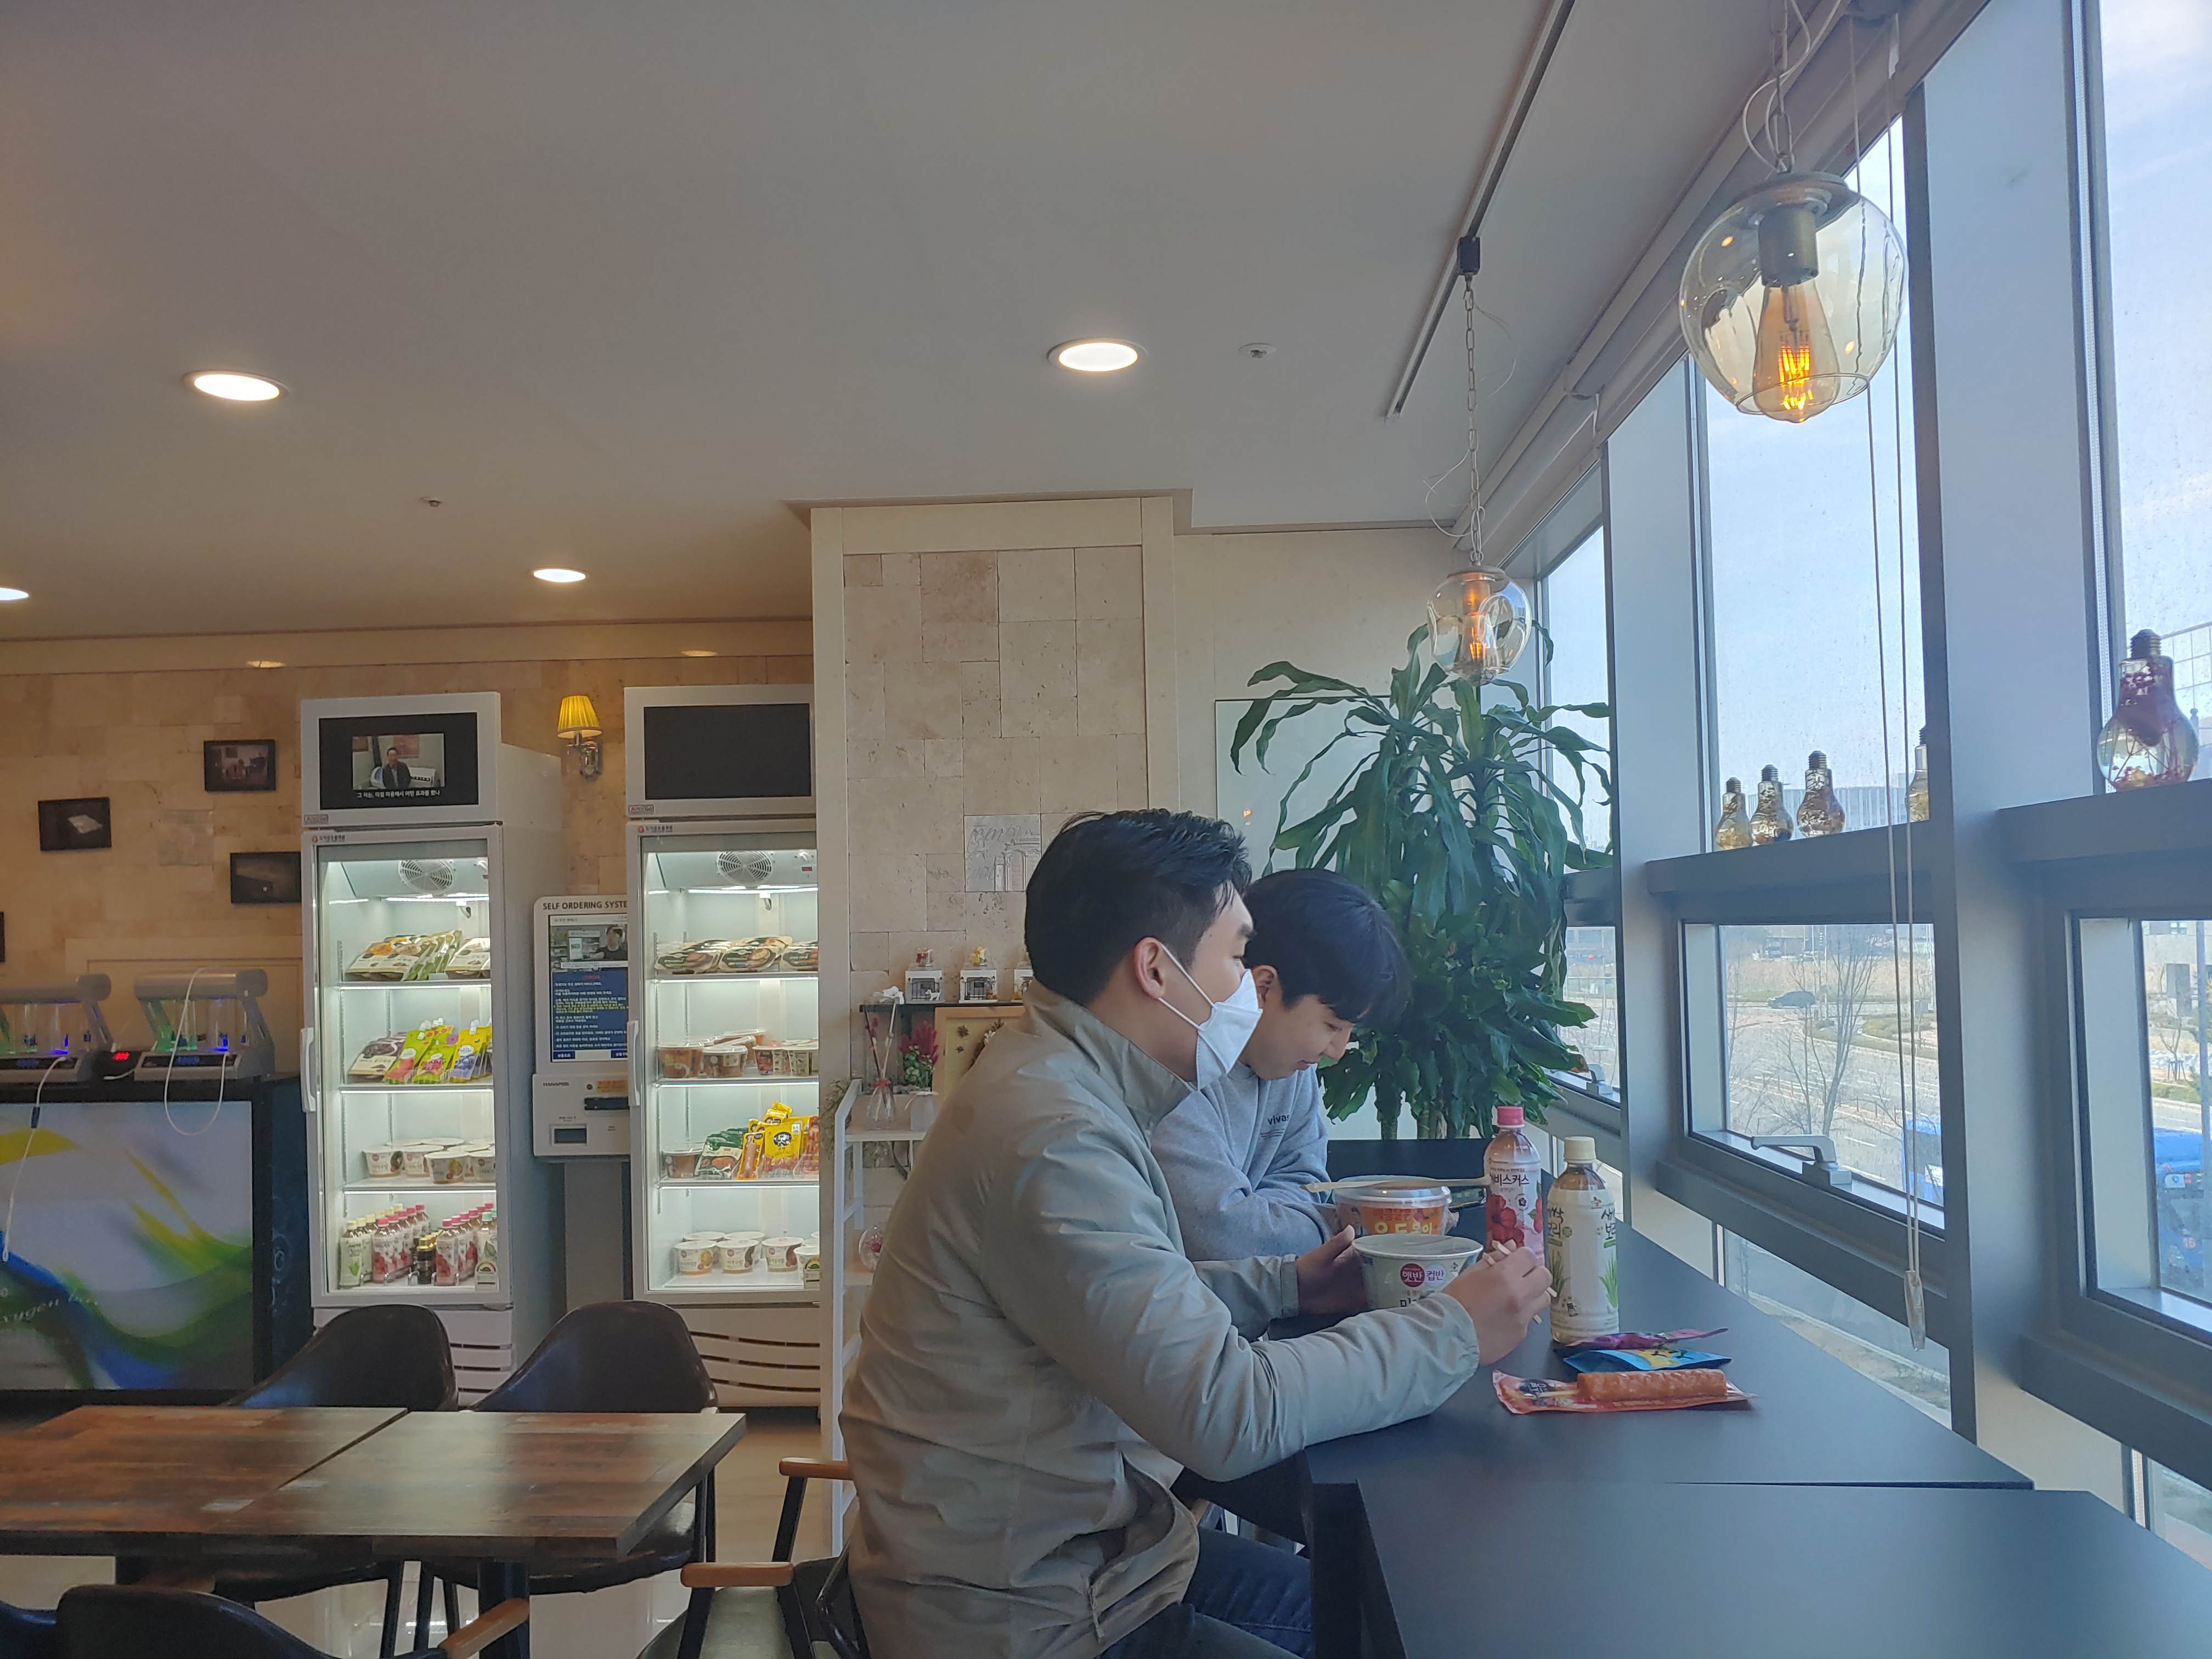 도시공유플랫폼의 인공지능 무인자판기 ‘아이스 고’에서 간식을 구입한 고객들이 간단하게 식사를 하고 있다.